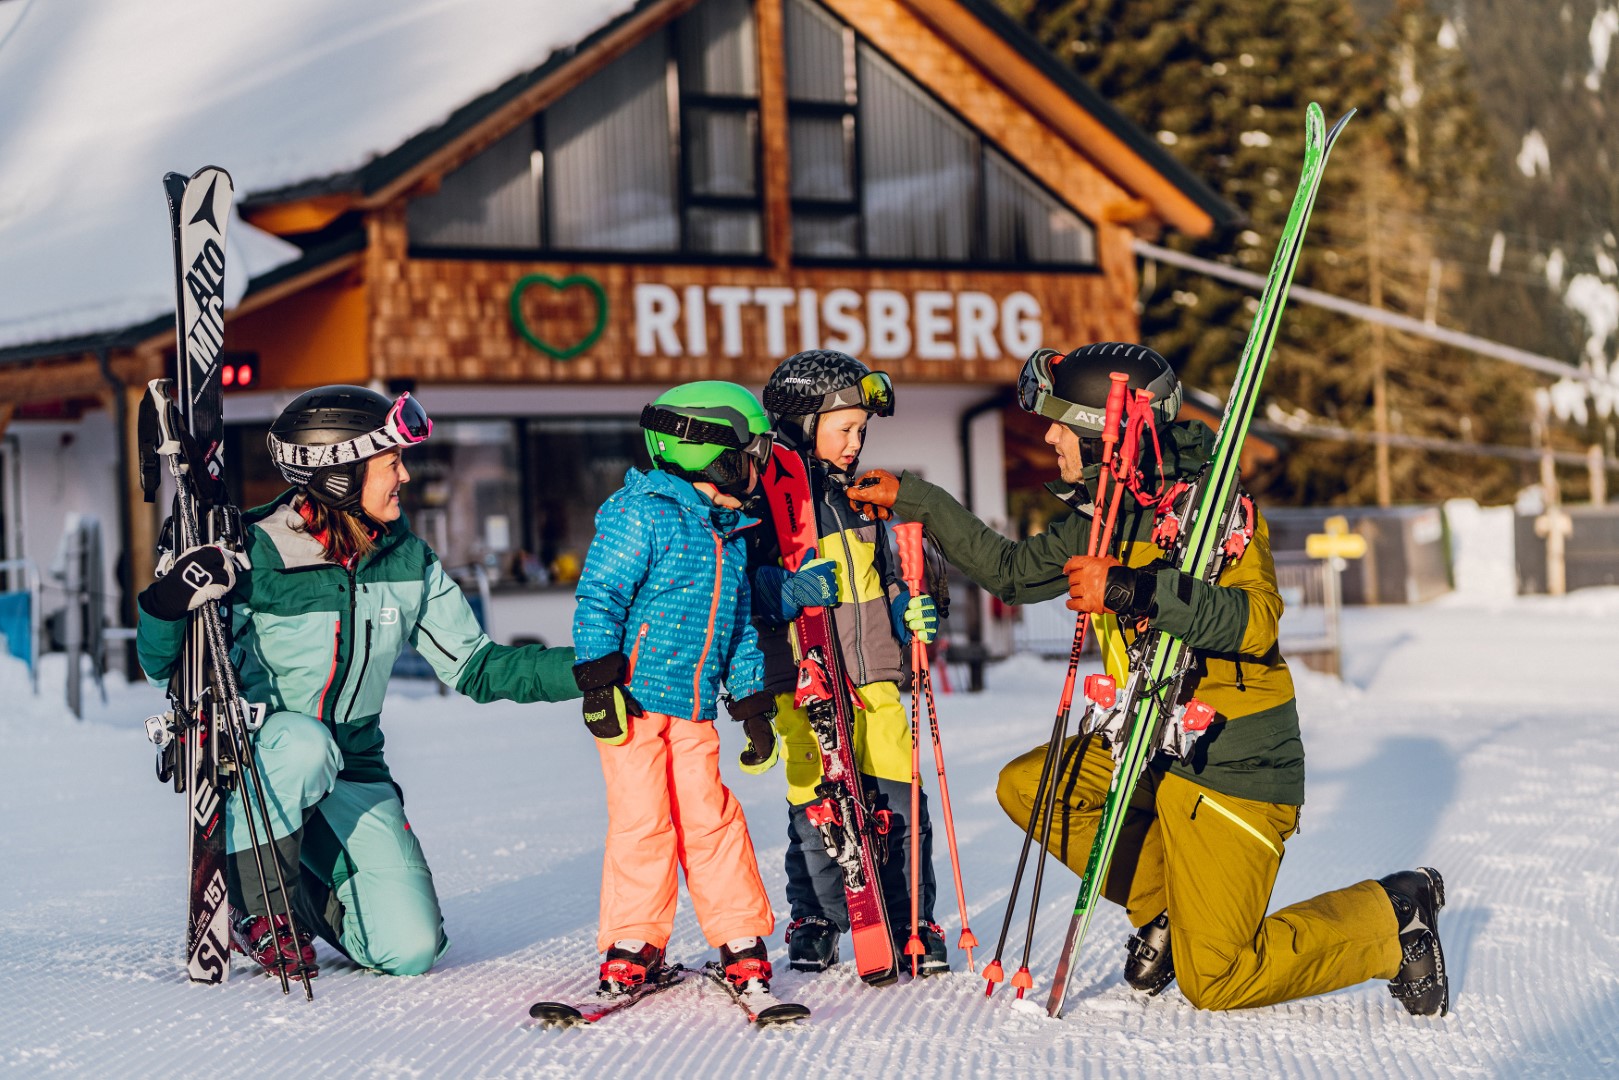 Das Angebot am Rittisberg ist im Sommer und im Winter auf Familien ausgerichtet. ©Rittis-Lift Engelhardt GmbH und Co KG